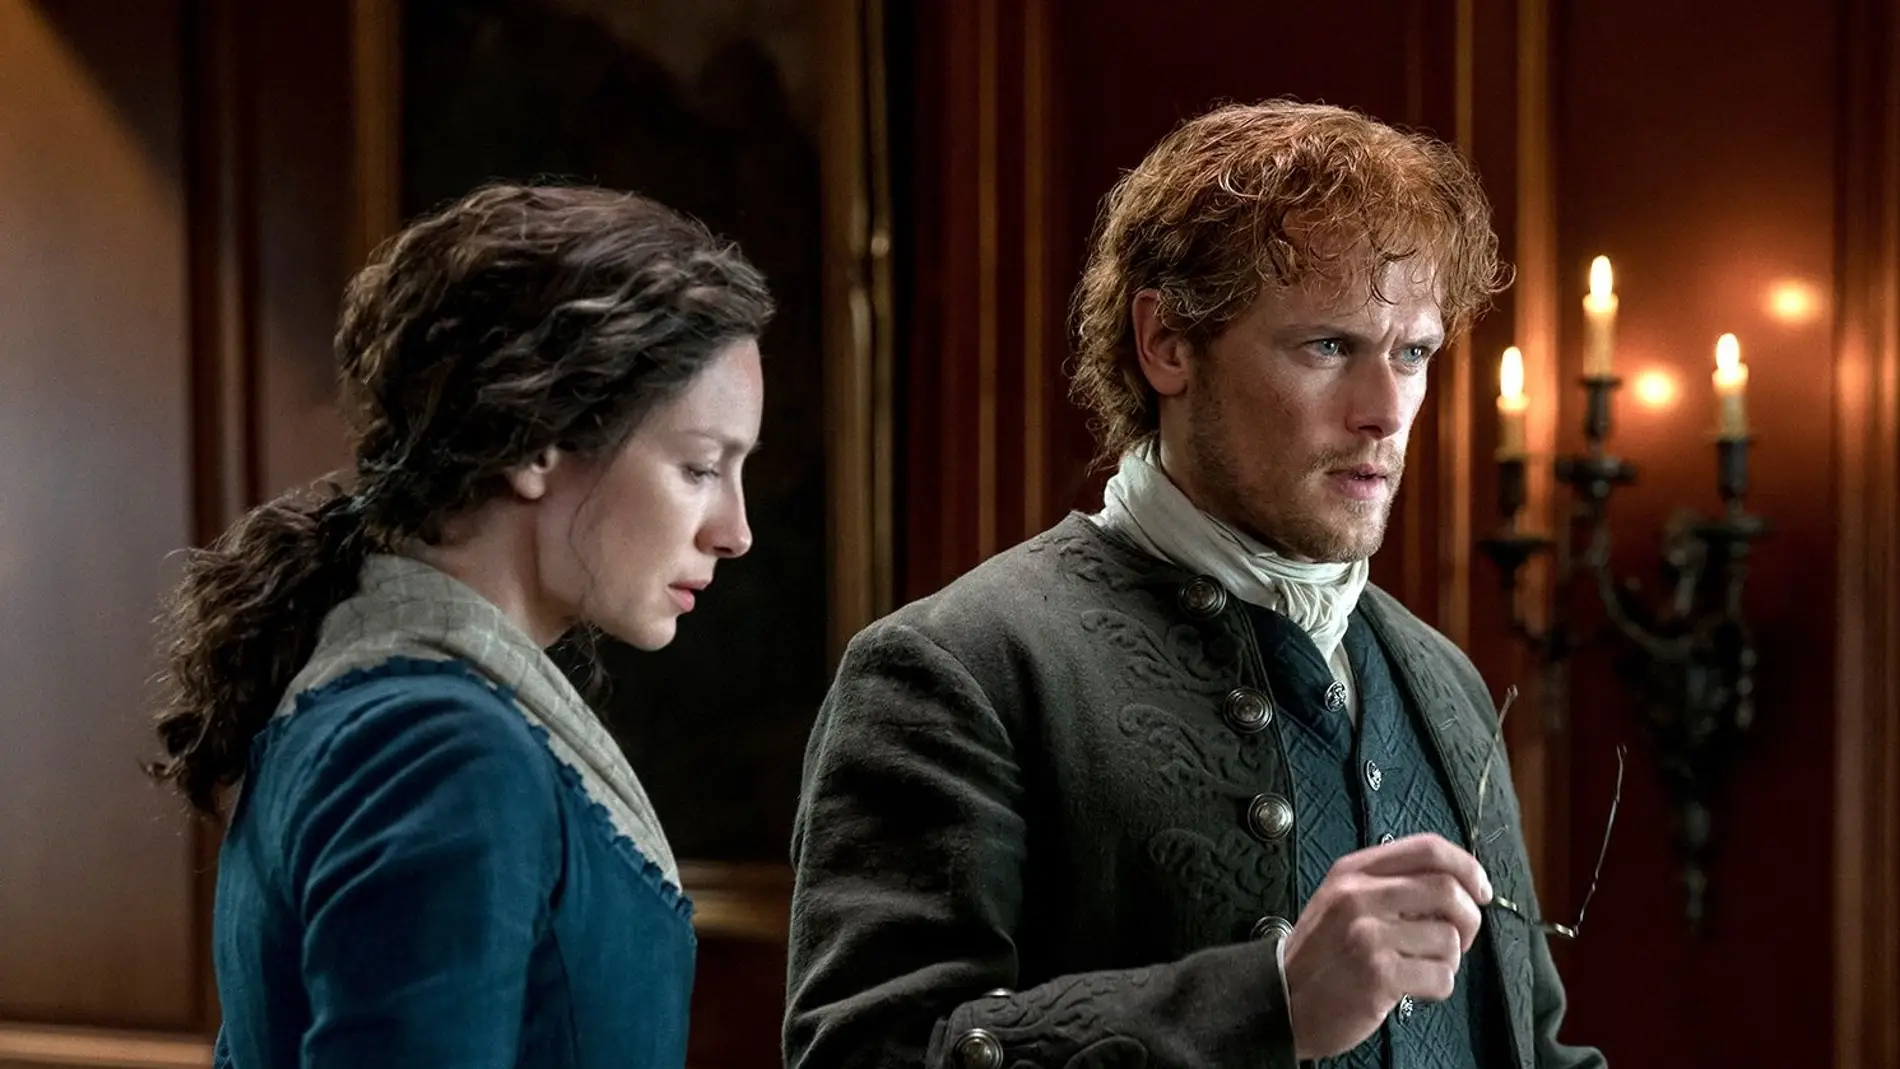 Sam Heughan y Caitriona Balfe como Claire y Jamie Fraser en 'Outlander'